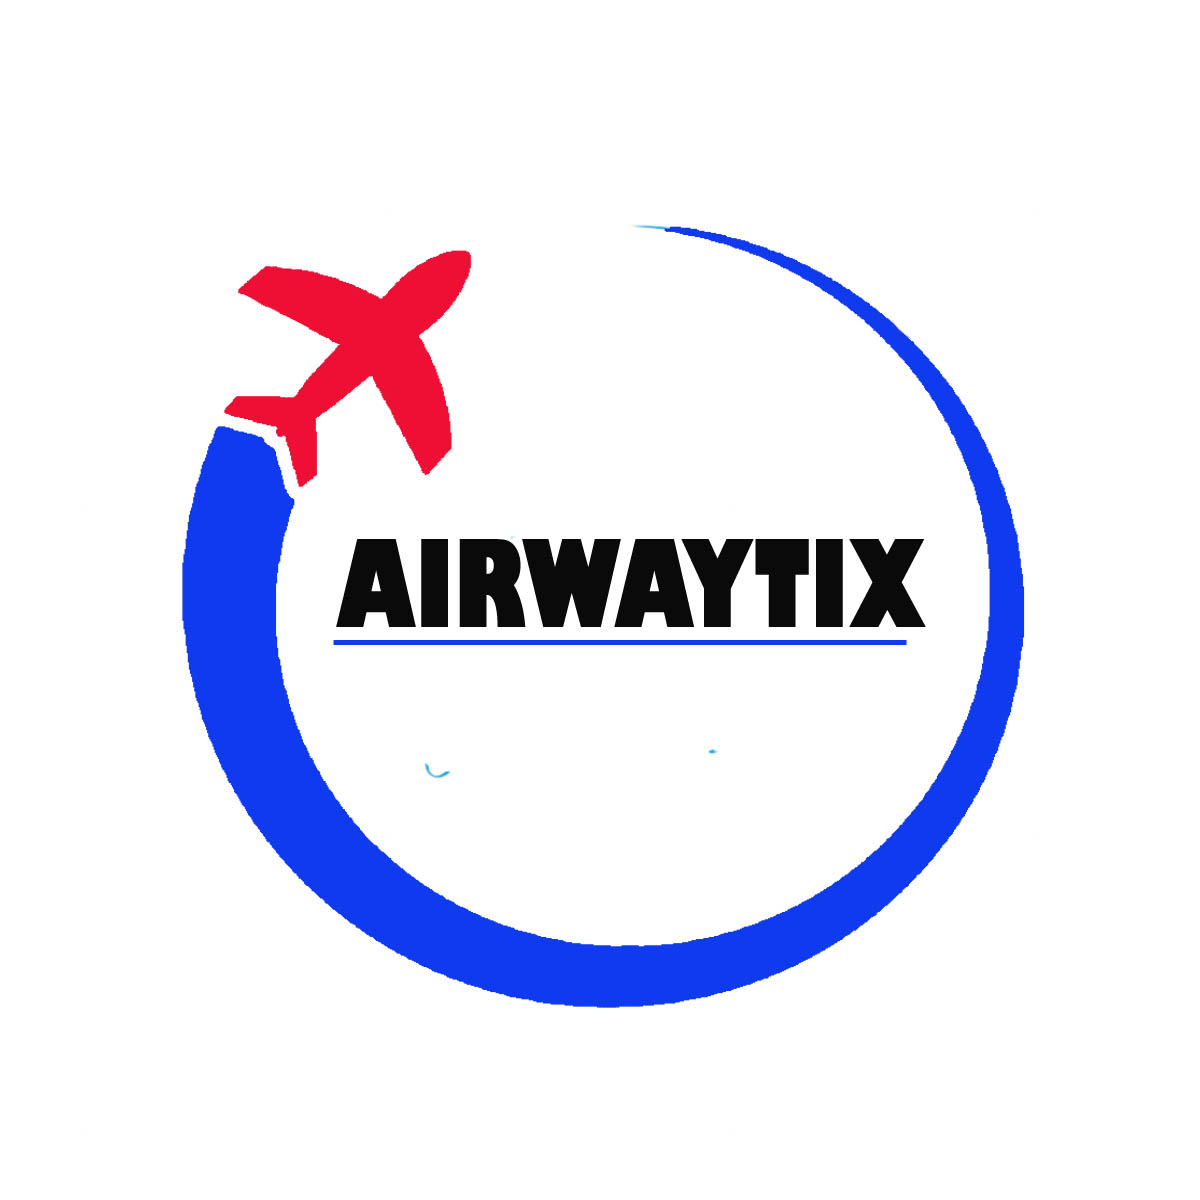 Airwaytix